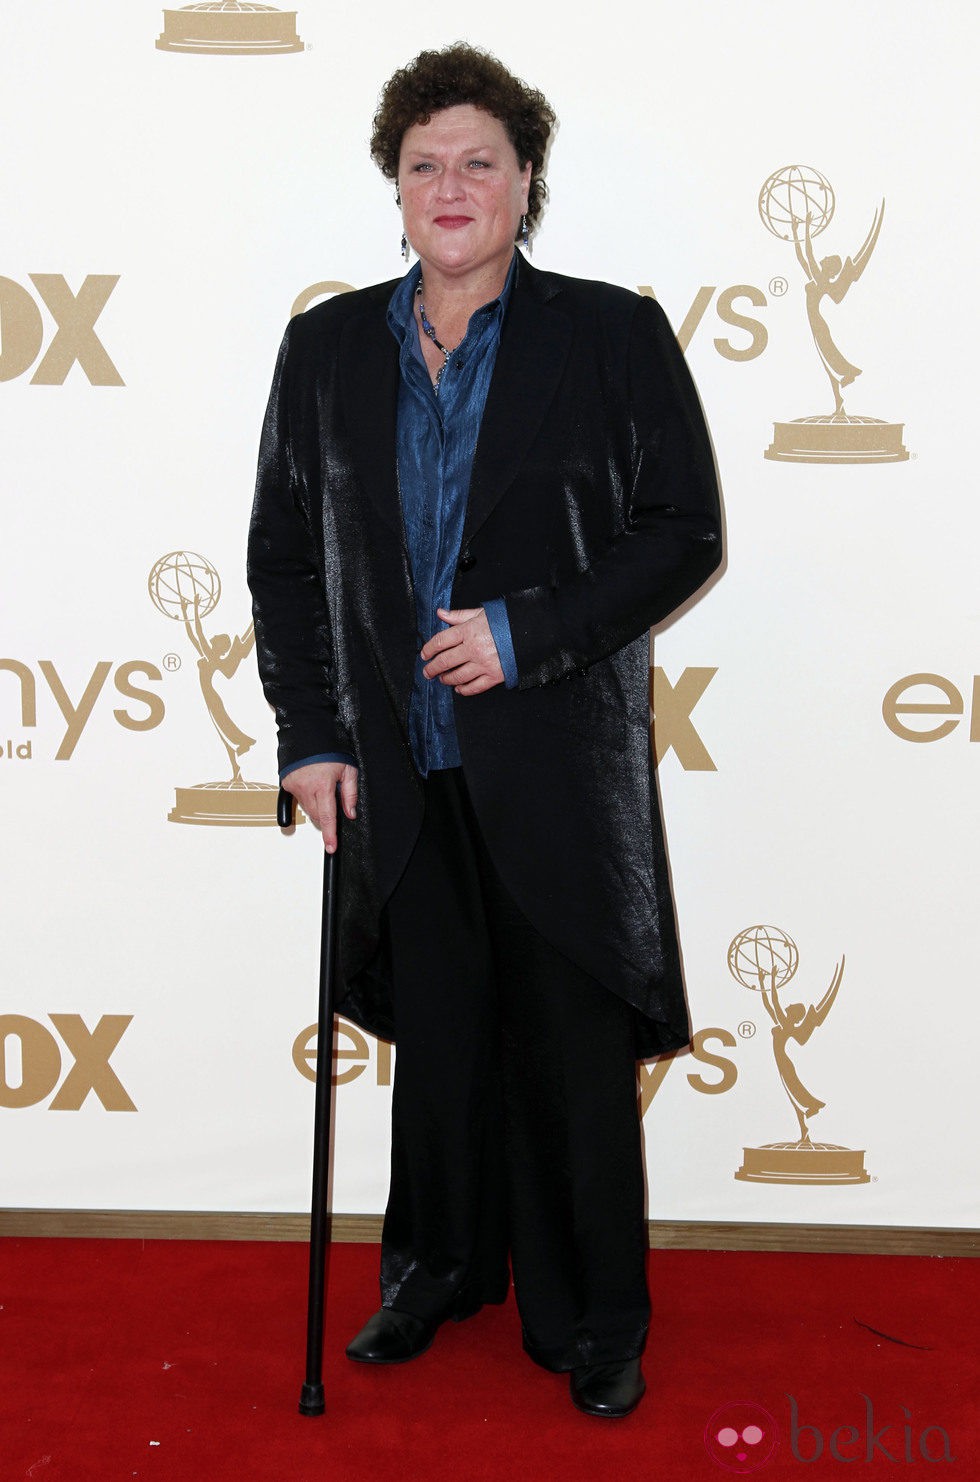 Dot Jones en los premios Emmy 2011